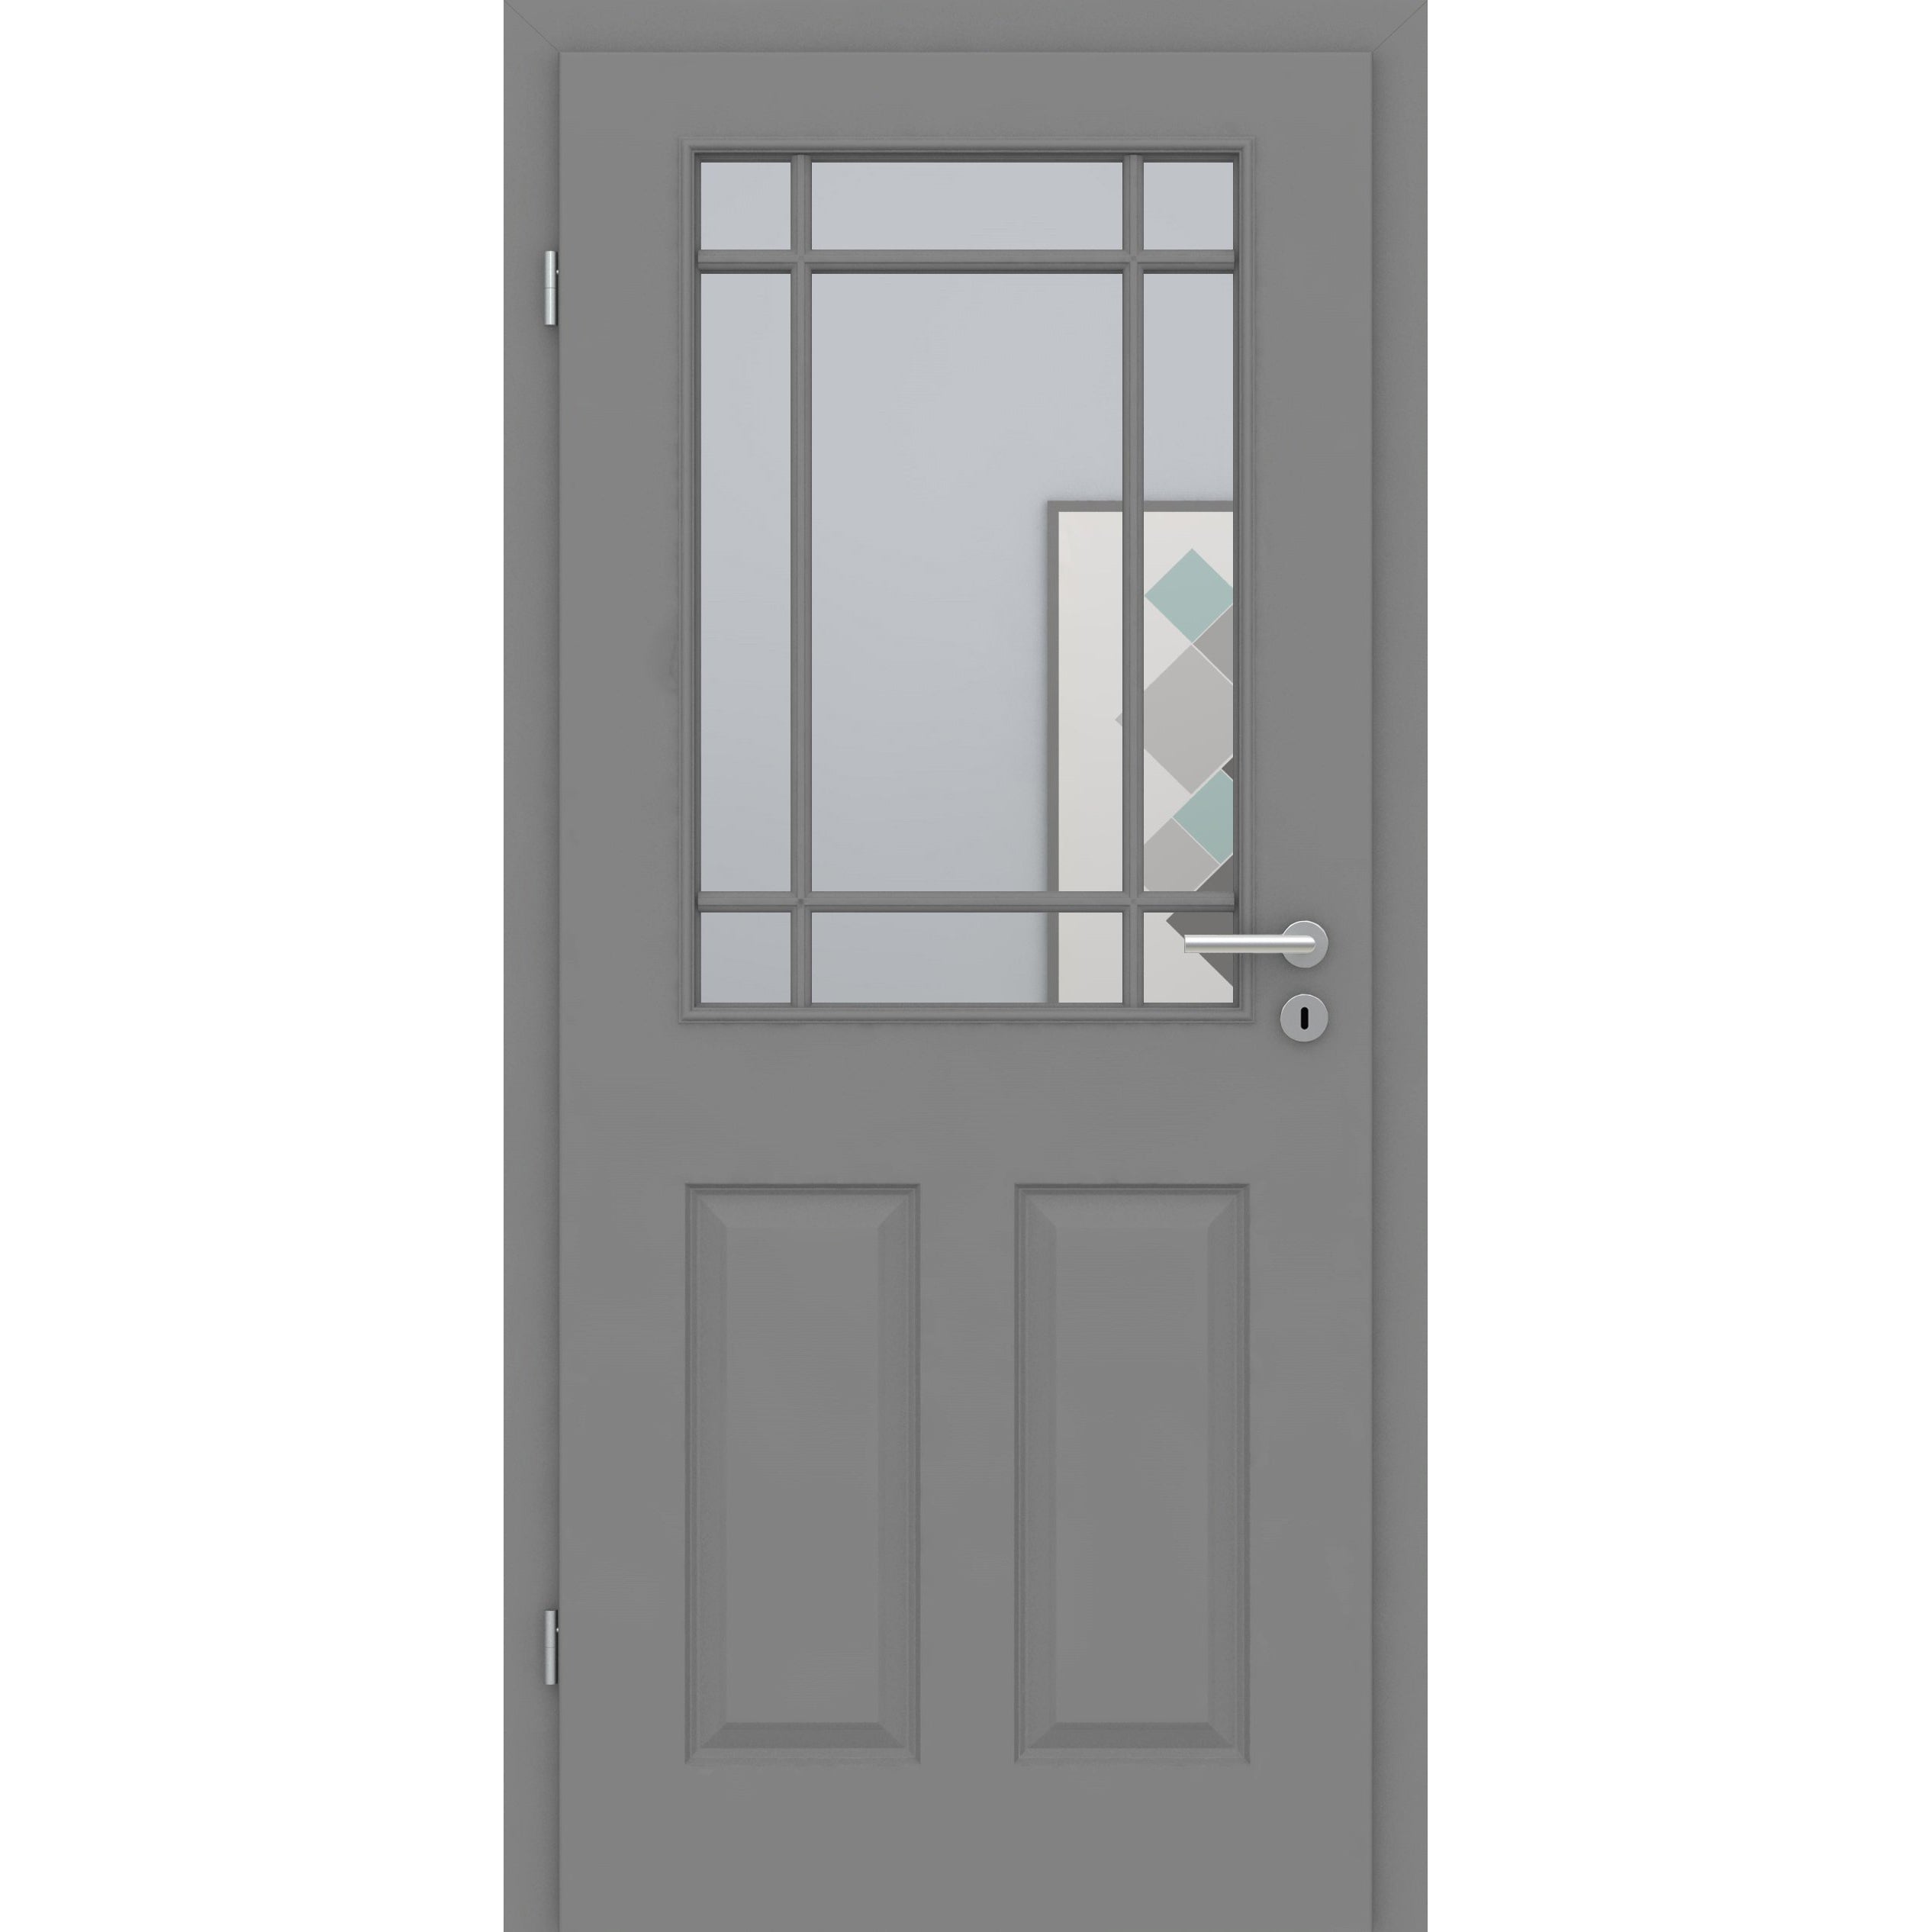 Zimmertür mit Lichtausschnitt mit Sprossenrahmen klassisch grau 4 Kassetten Designkante - Modell Stiltür K47LASPK